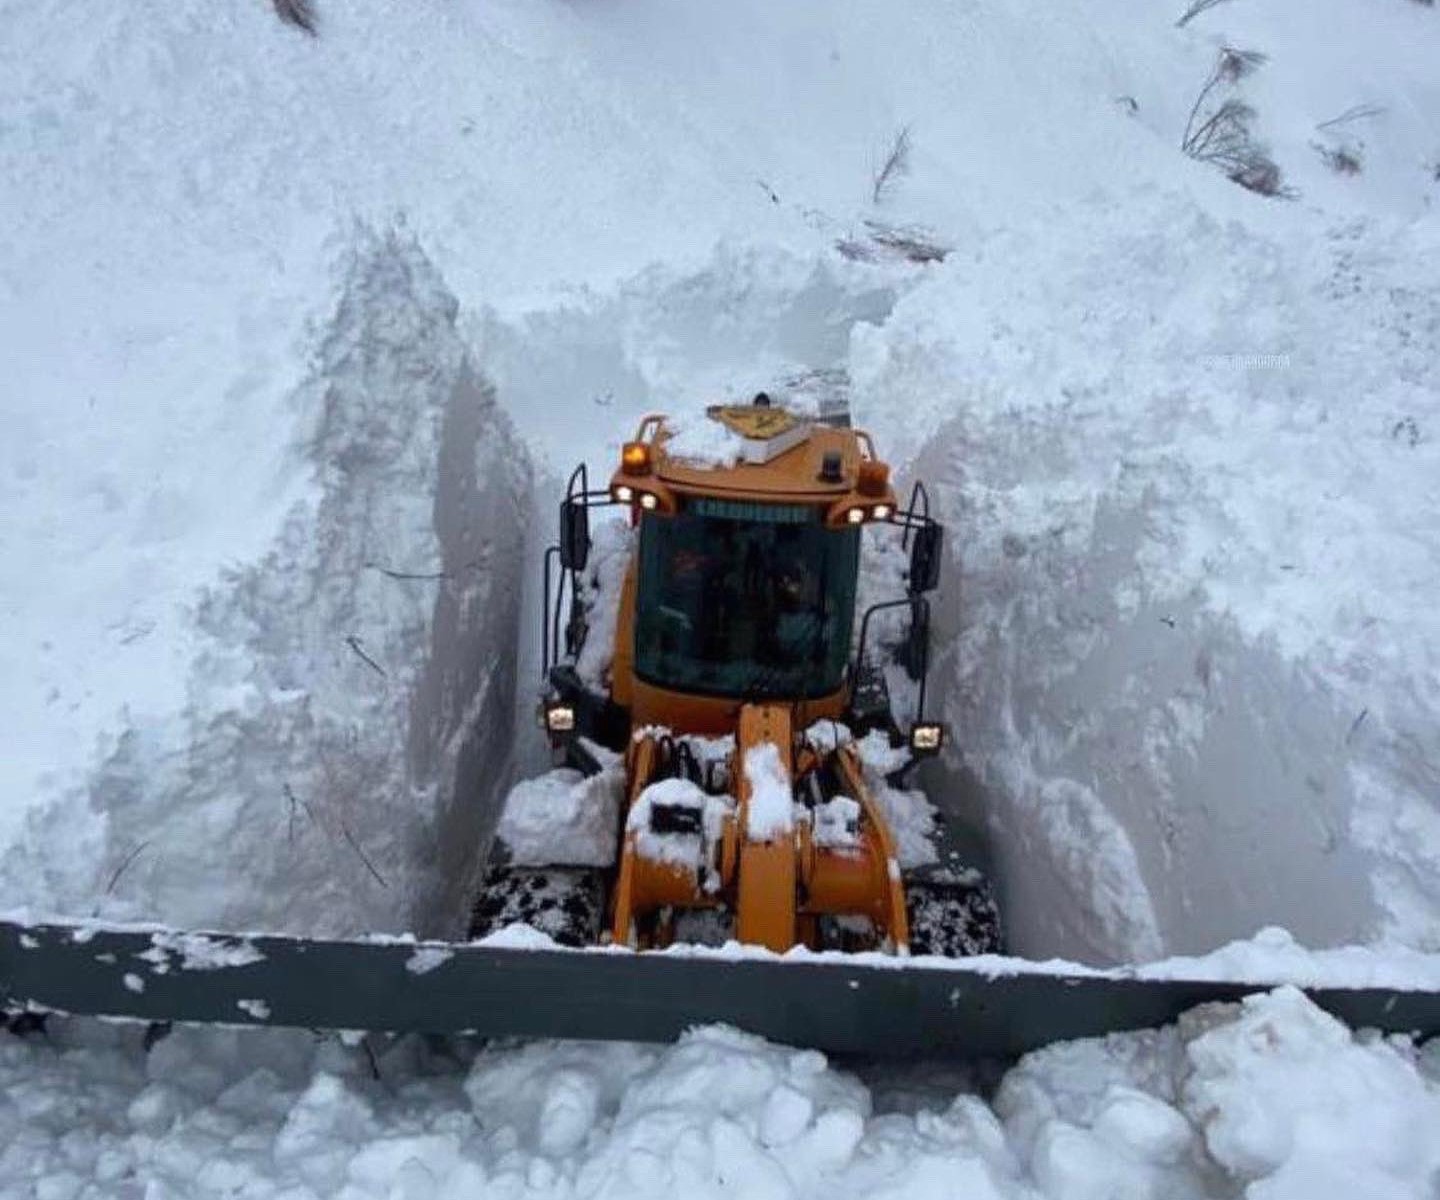 Andorra registra una nevada de 3 días récord para un 11 de diciembre